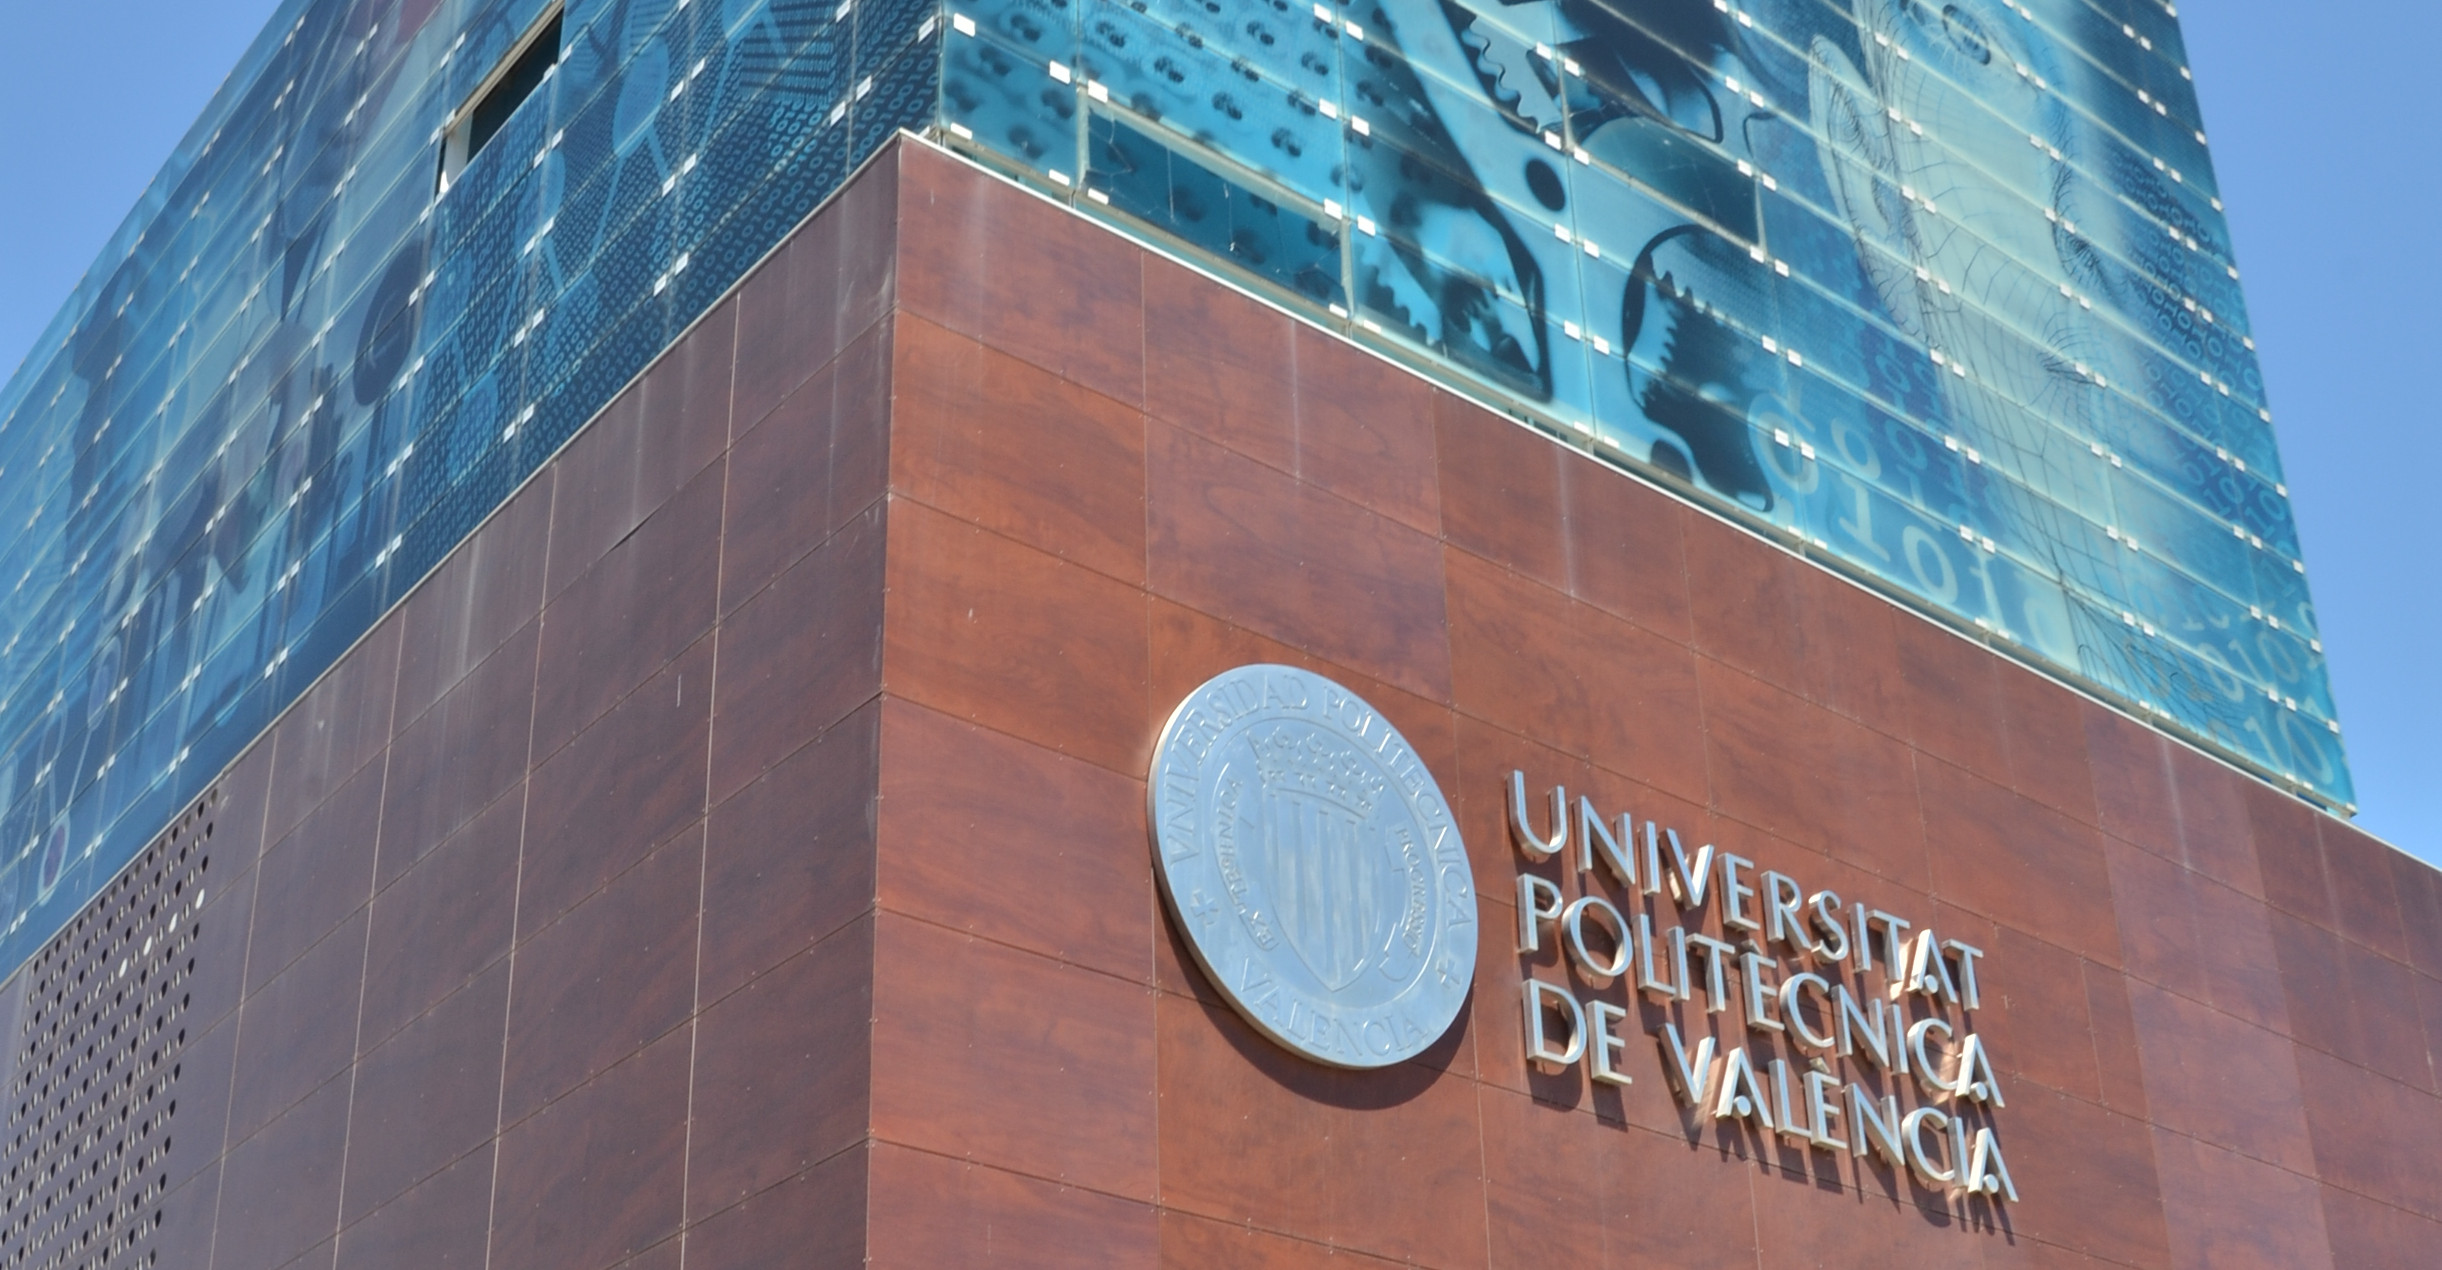 La Universitat Politècnica de València joins RENIC